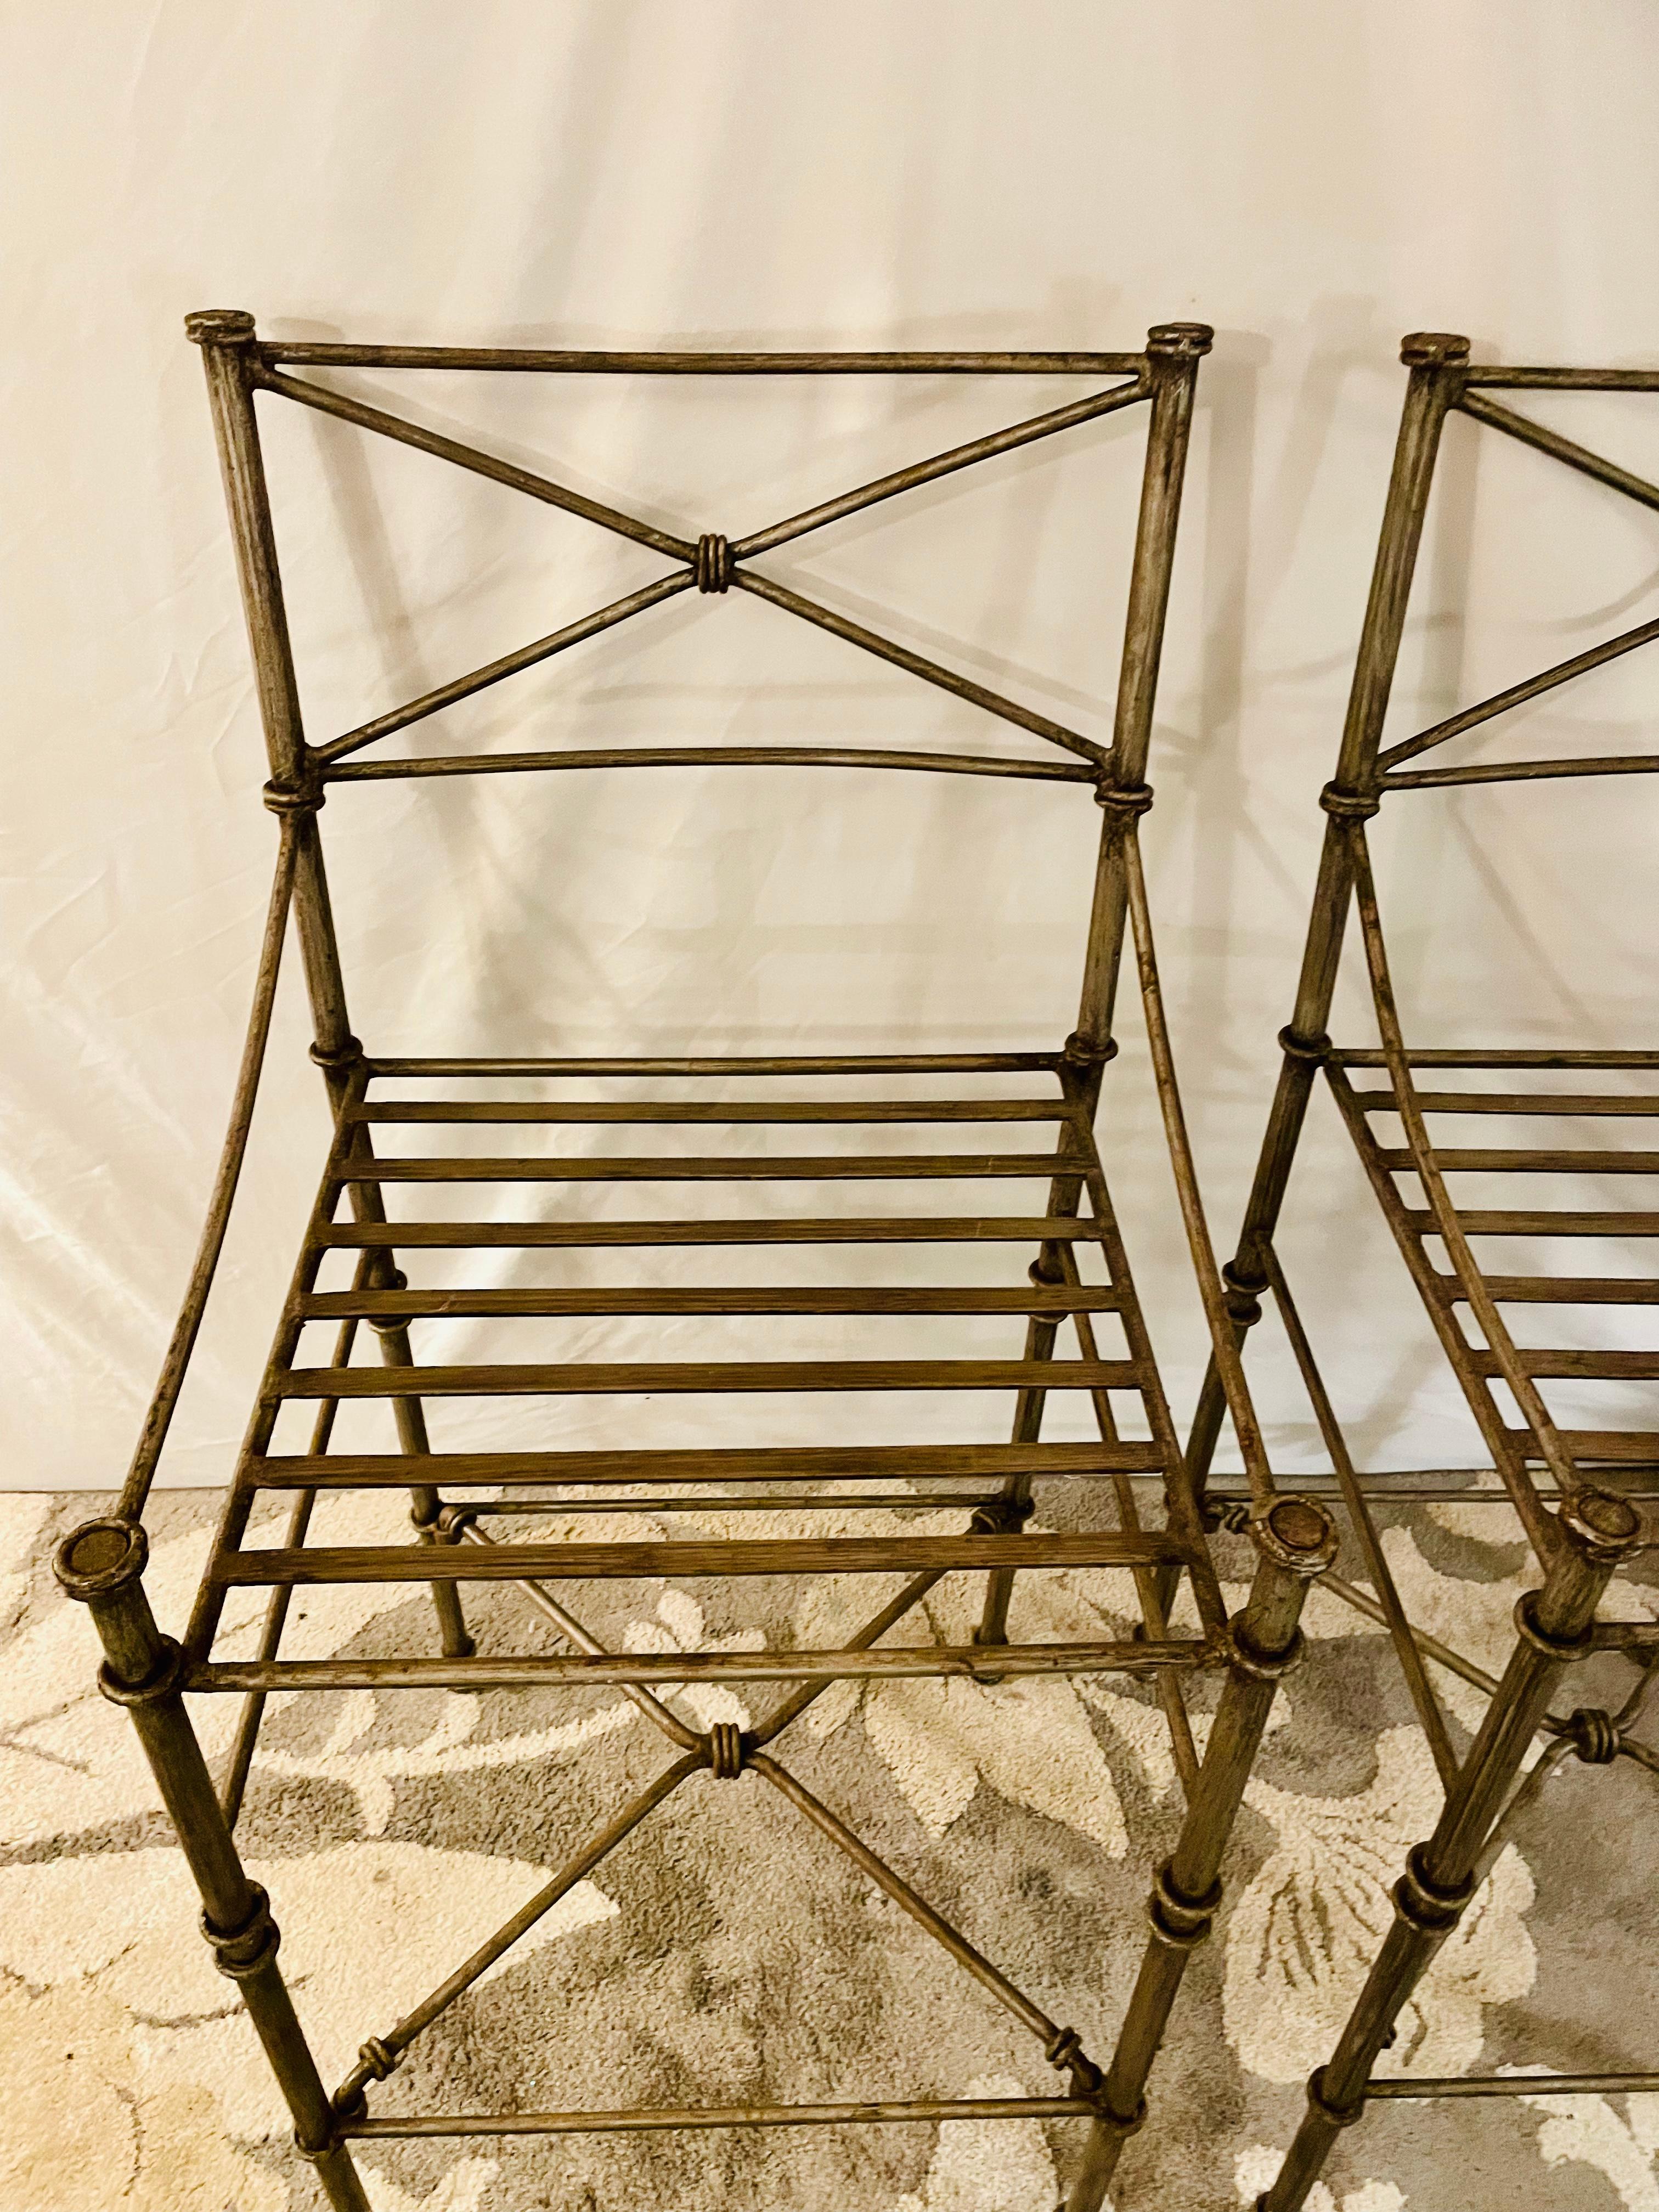 Chaises en fer forgé inspirées de Giacometti Ensemble de 4 tabourets de bar Chaises à manger

En stock et prêt à être expédié, cet ensemble de quatre lourdes chaises de jardin en fer, recouvertes d'une exquise finition de style étain vieilli. Cet